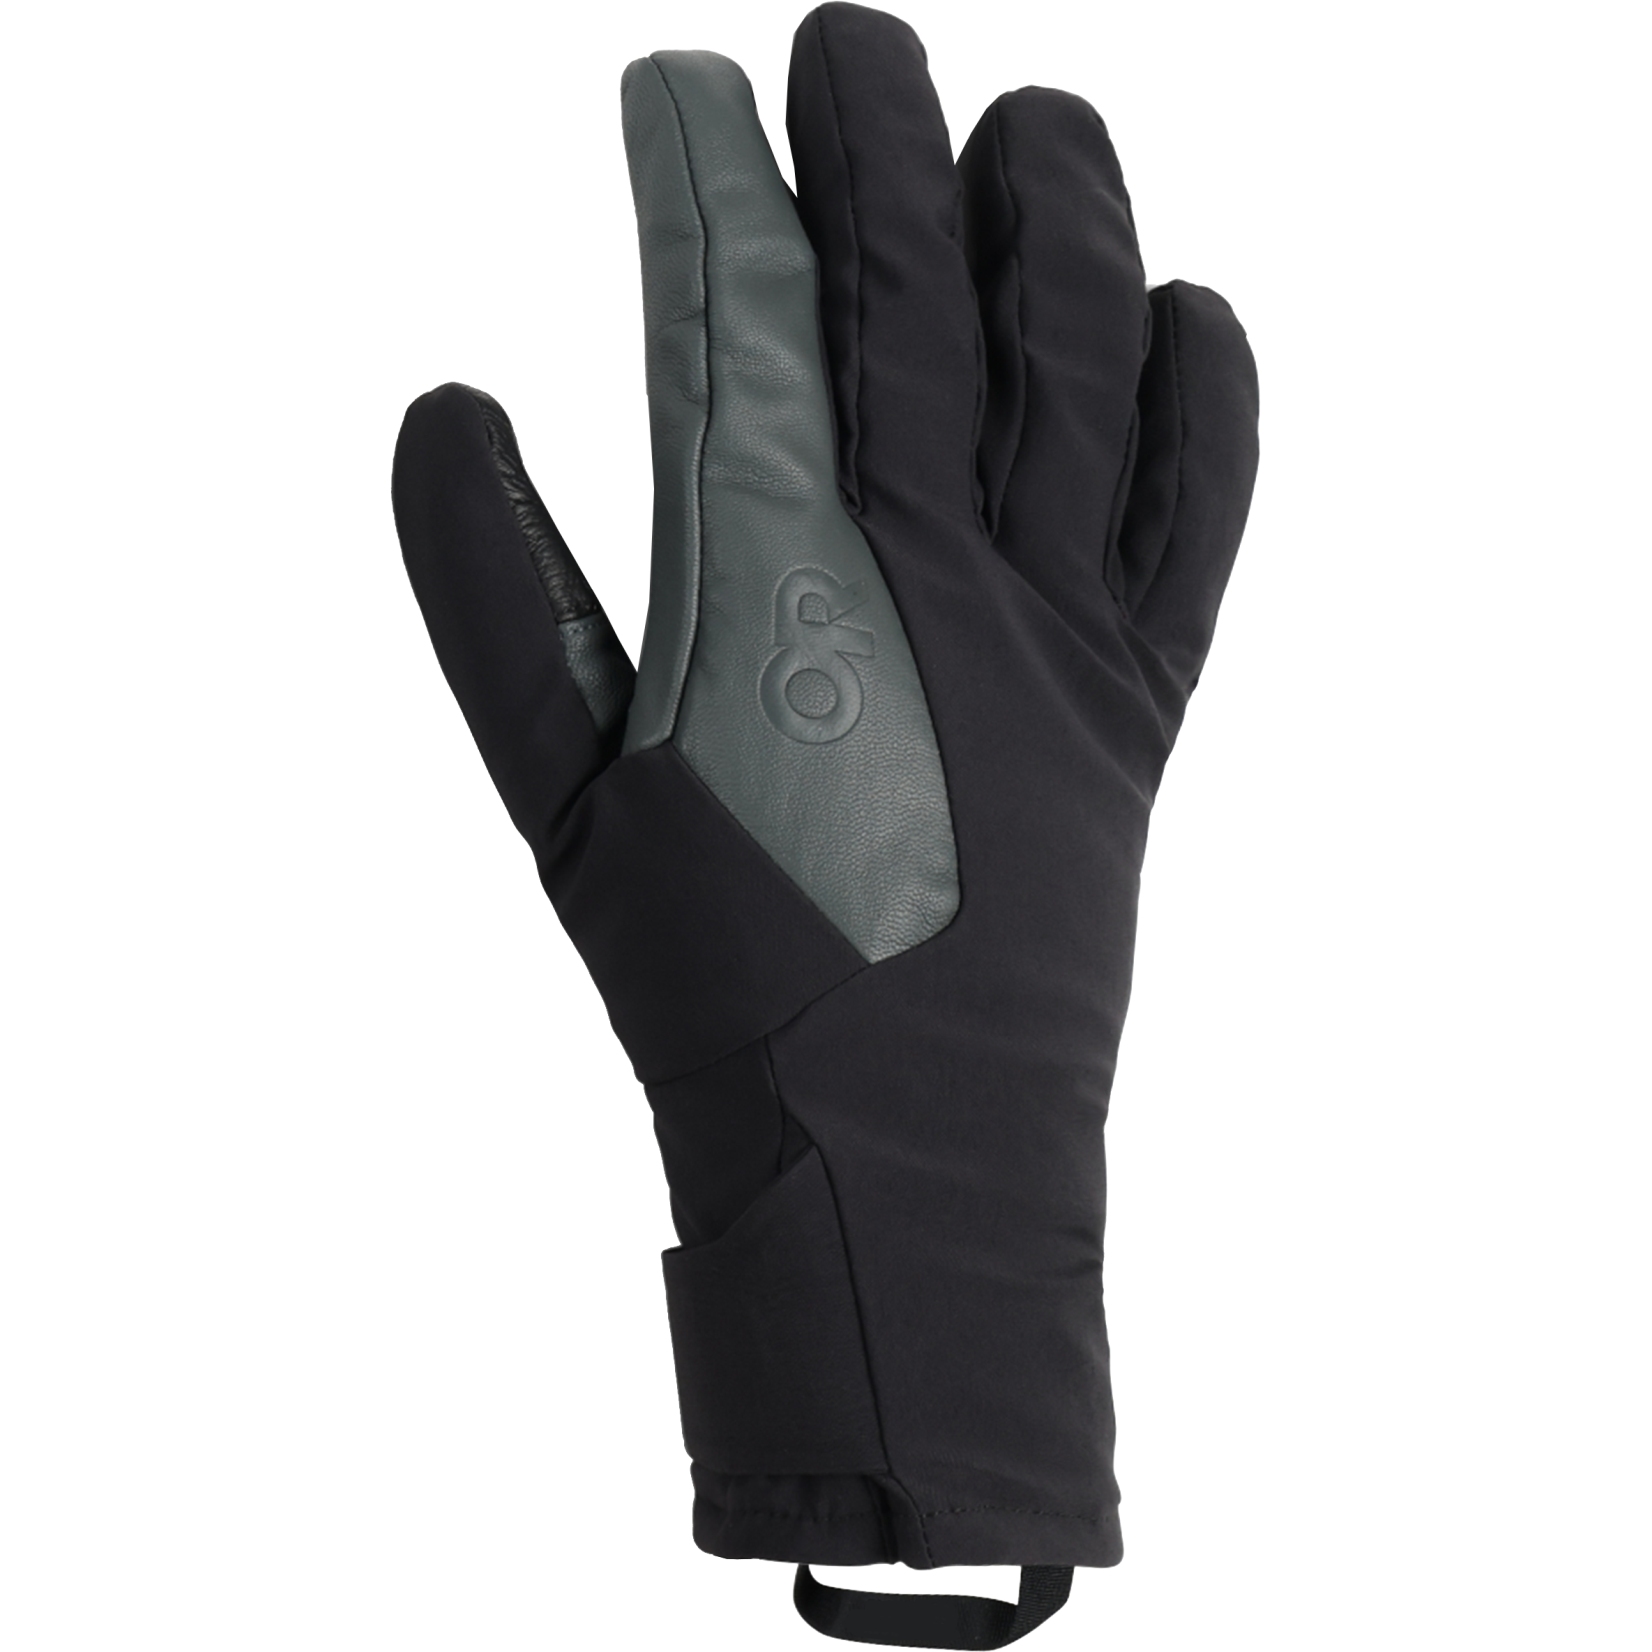 Productfoto van Outdoor Research Heren Sureshot Pro Handschoenen - zwart